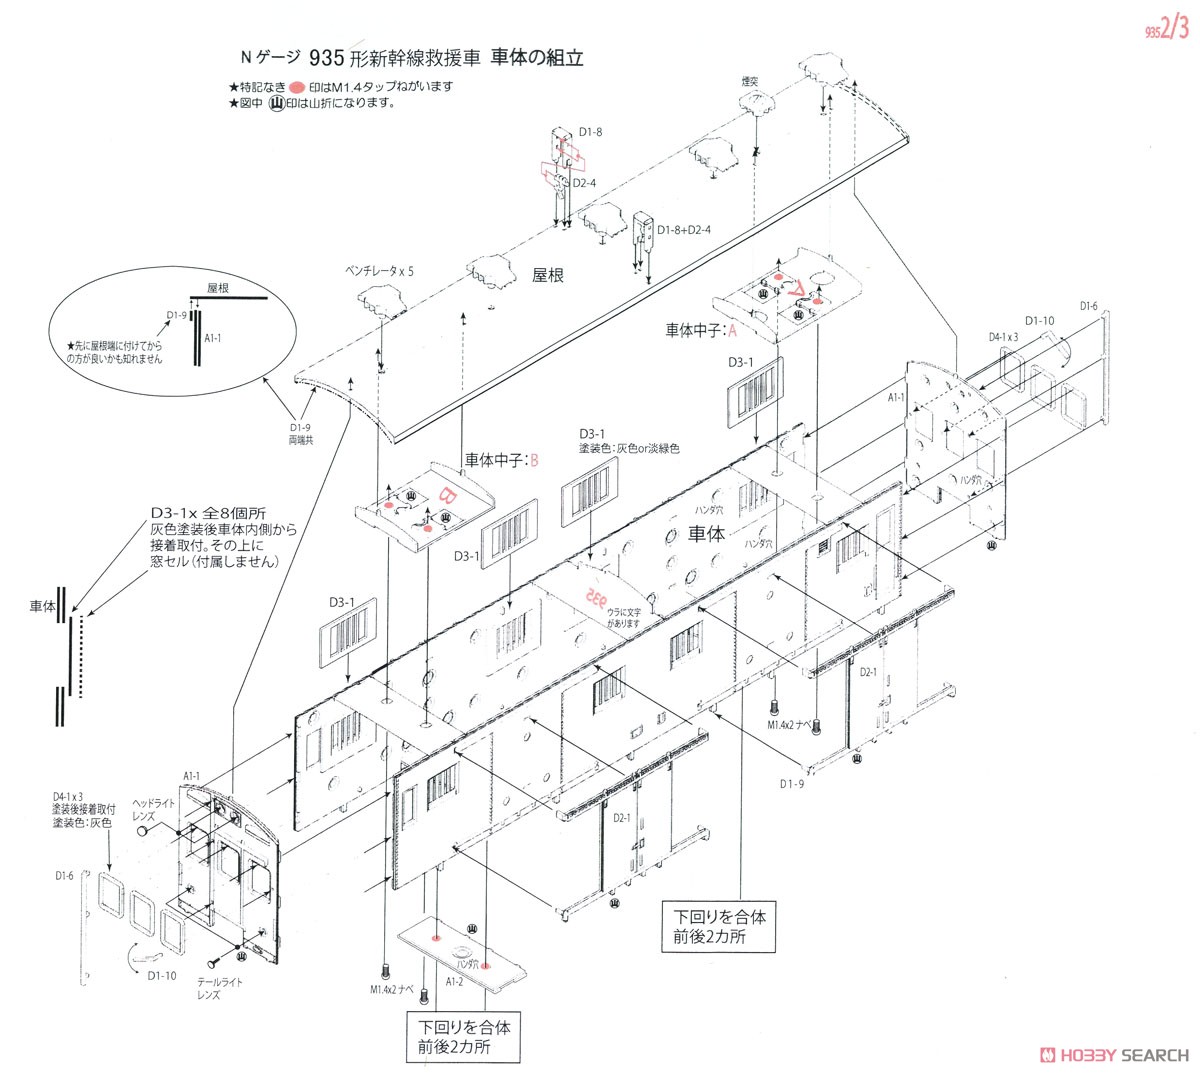 国鉄 935形 新幹線救援車 組立キット (組み立てキット) (鉄道模型) 設計図2